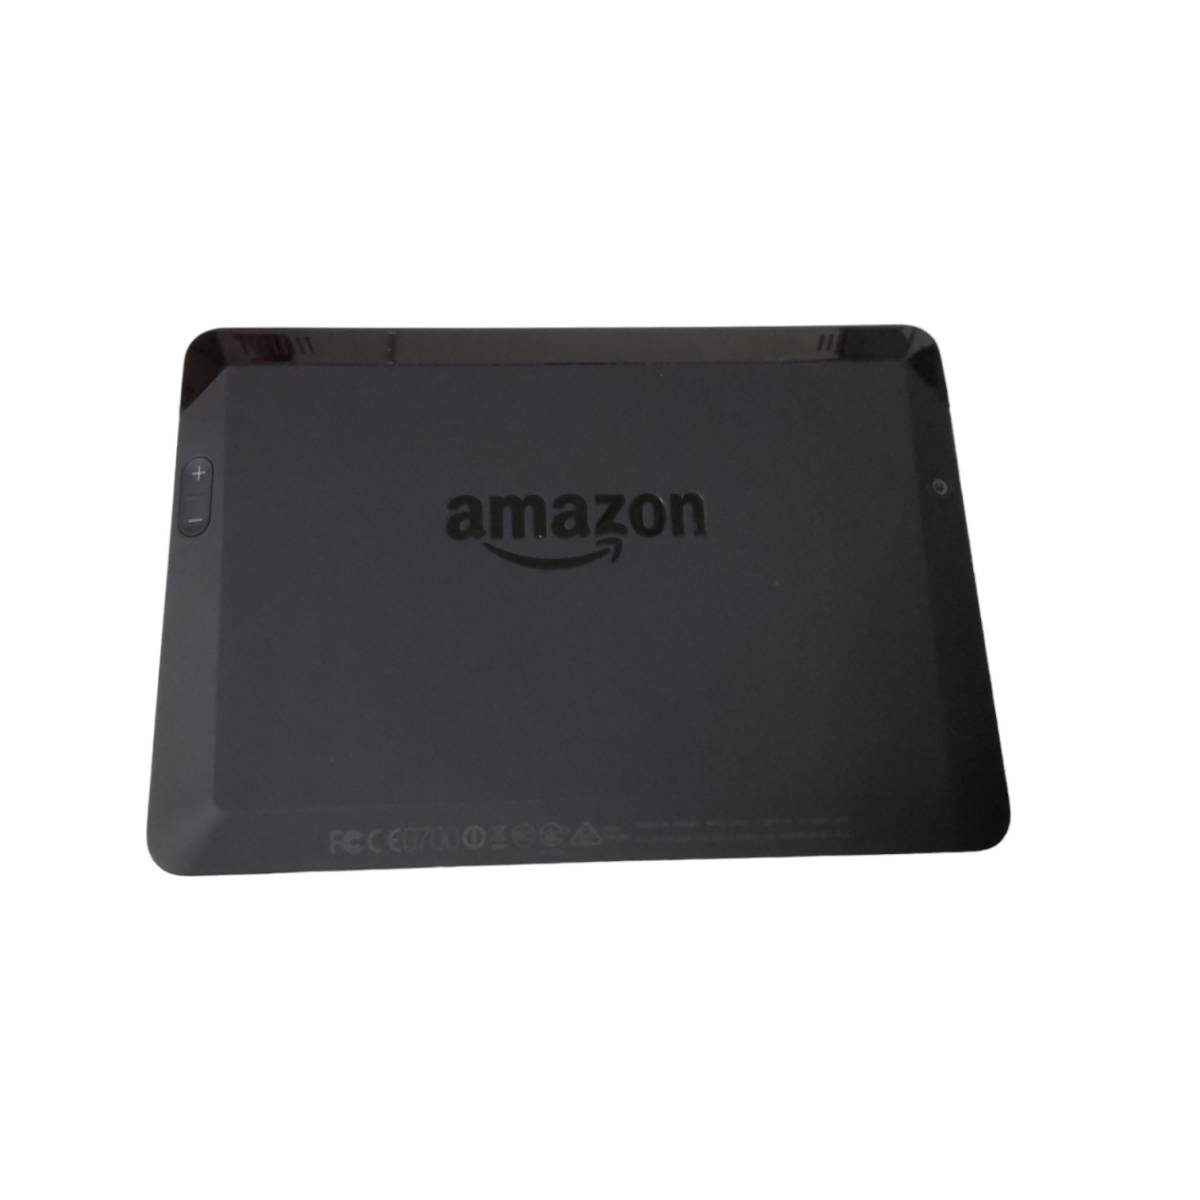 【中古品】 初期化済み Amazon kindle アマゾン キンドル Fire HDX7 タブレット 電子書籍リーダー N56829RL